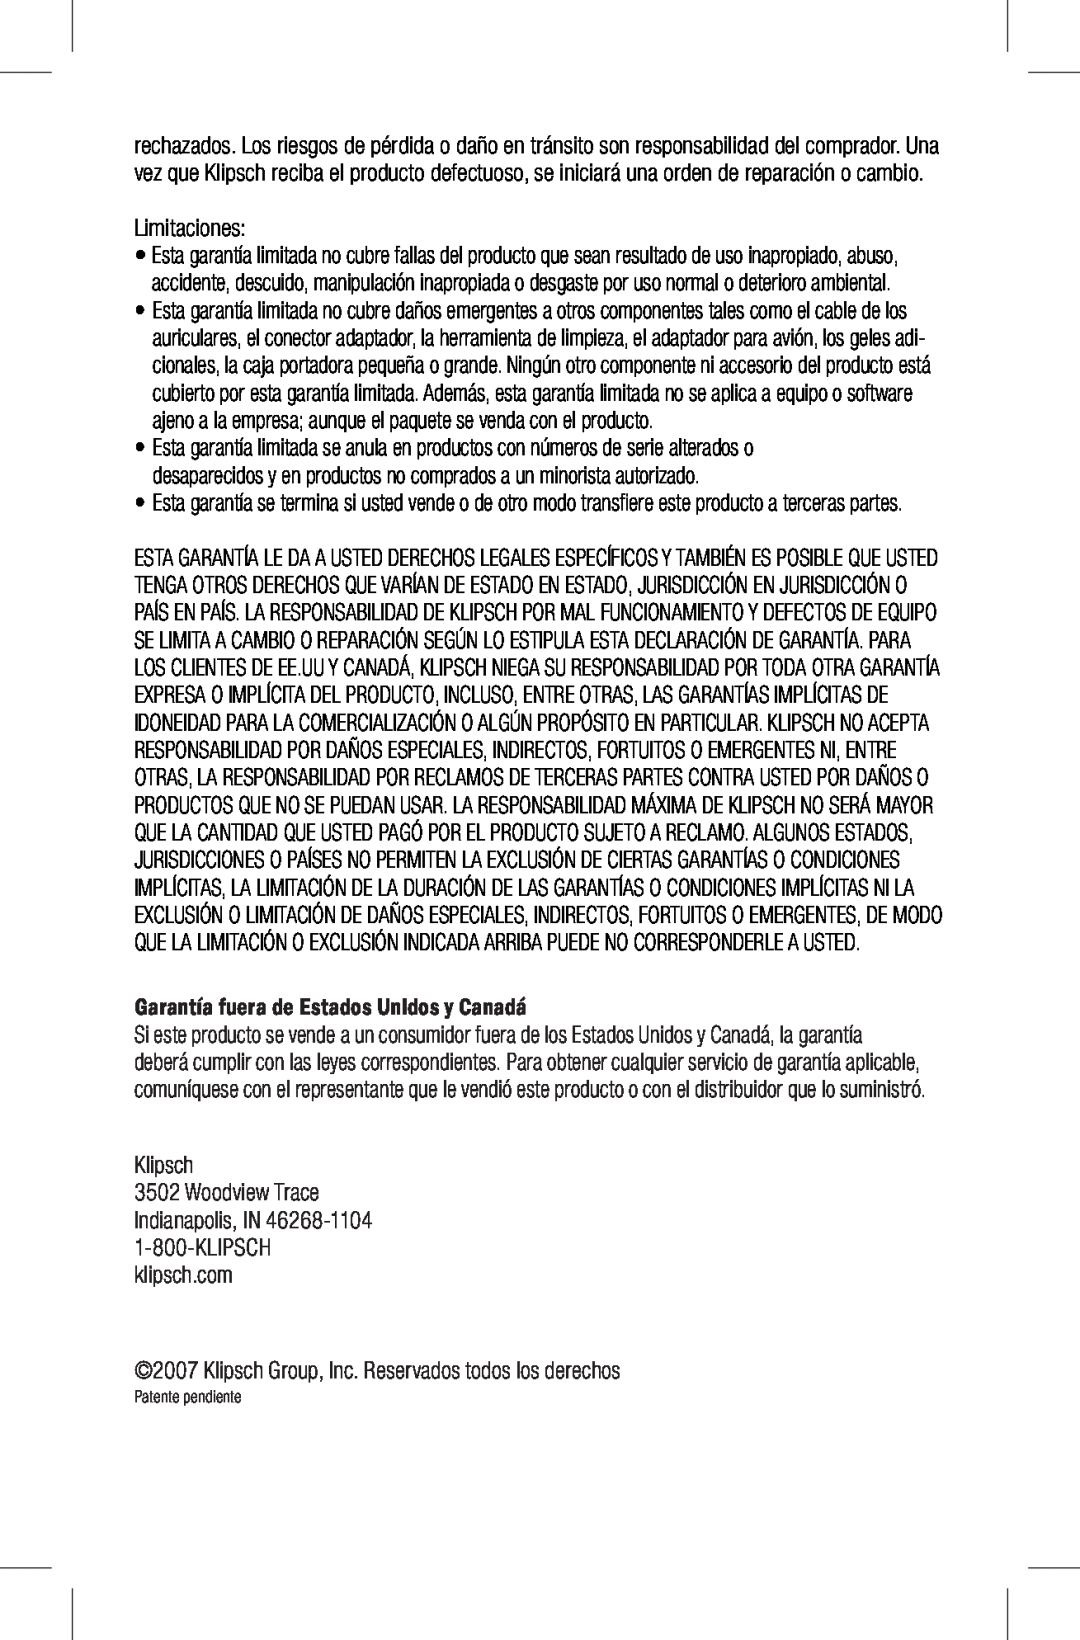 Klipsch Earphones owner manual Limitaciones, Garantía fuera de Estados Unidos y Canadá, Klipsch, Patente pendiente 